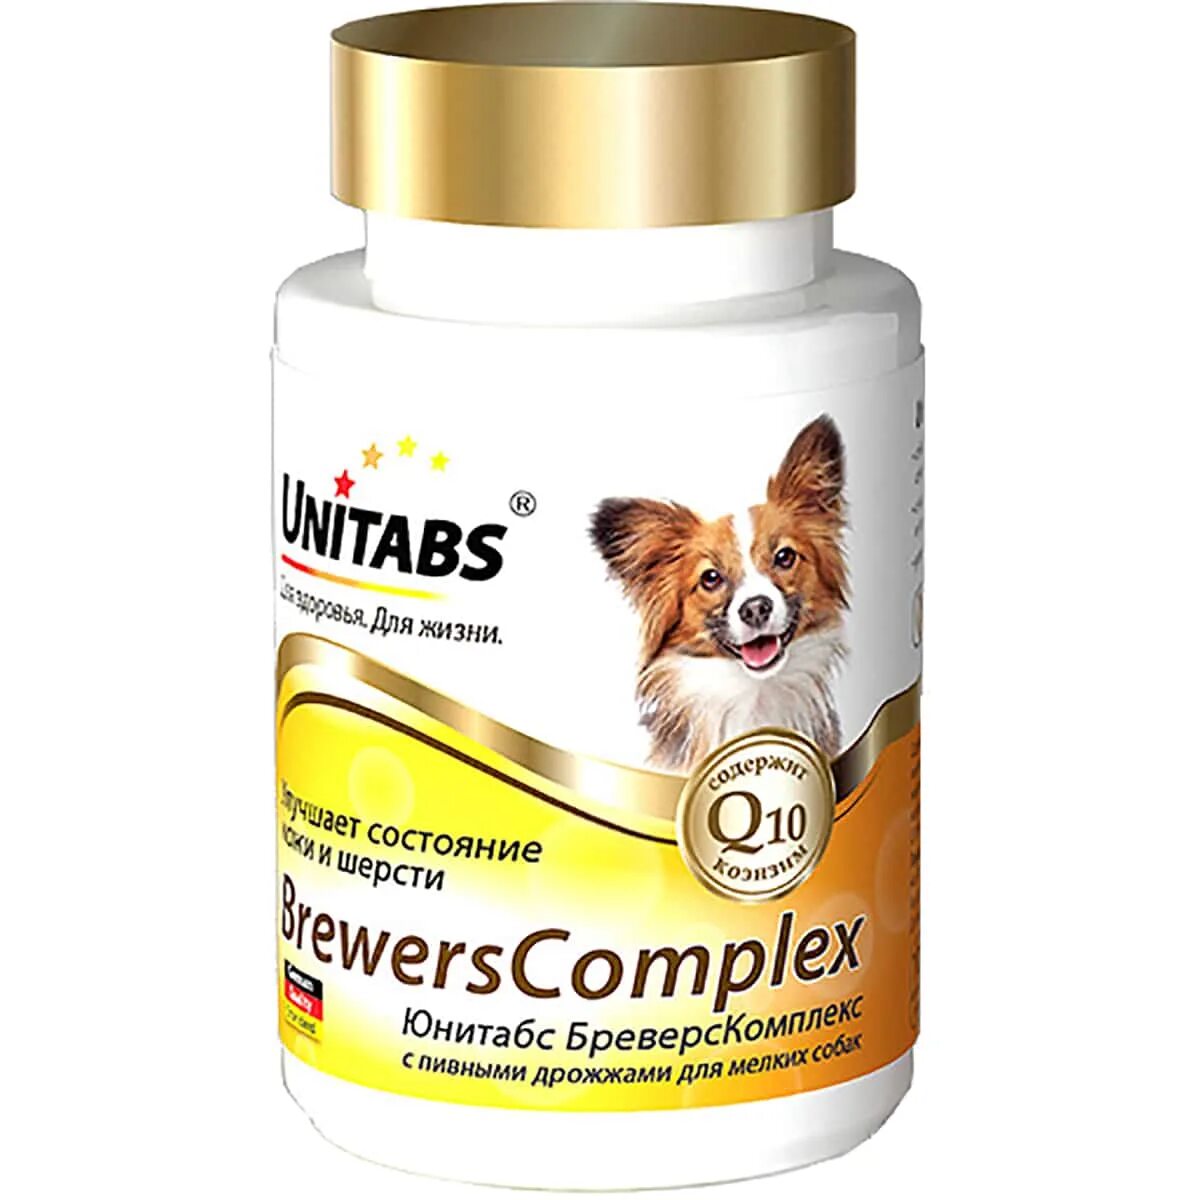 ЭКОПРОМ UNITABS витамины для собак крупных пород q10 Immuno Complex 100 таб u205. Юнитабс CALCIPLUS С q10 для собак 100 таб. UNITABS витамины для собак. Витамины Юнитабс для собак ИММУНОКОМПЛЕКС. Собака мама витамины